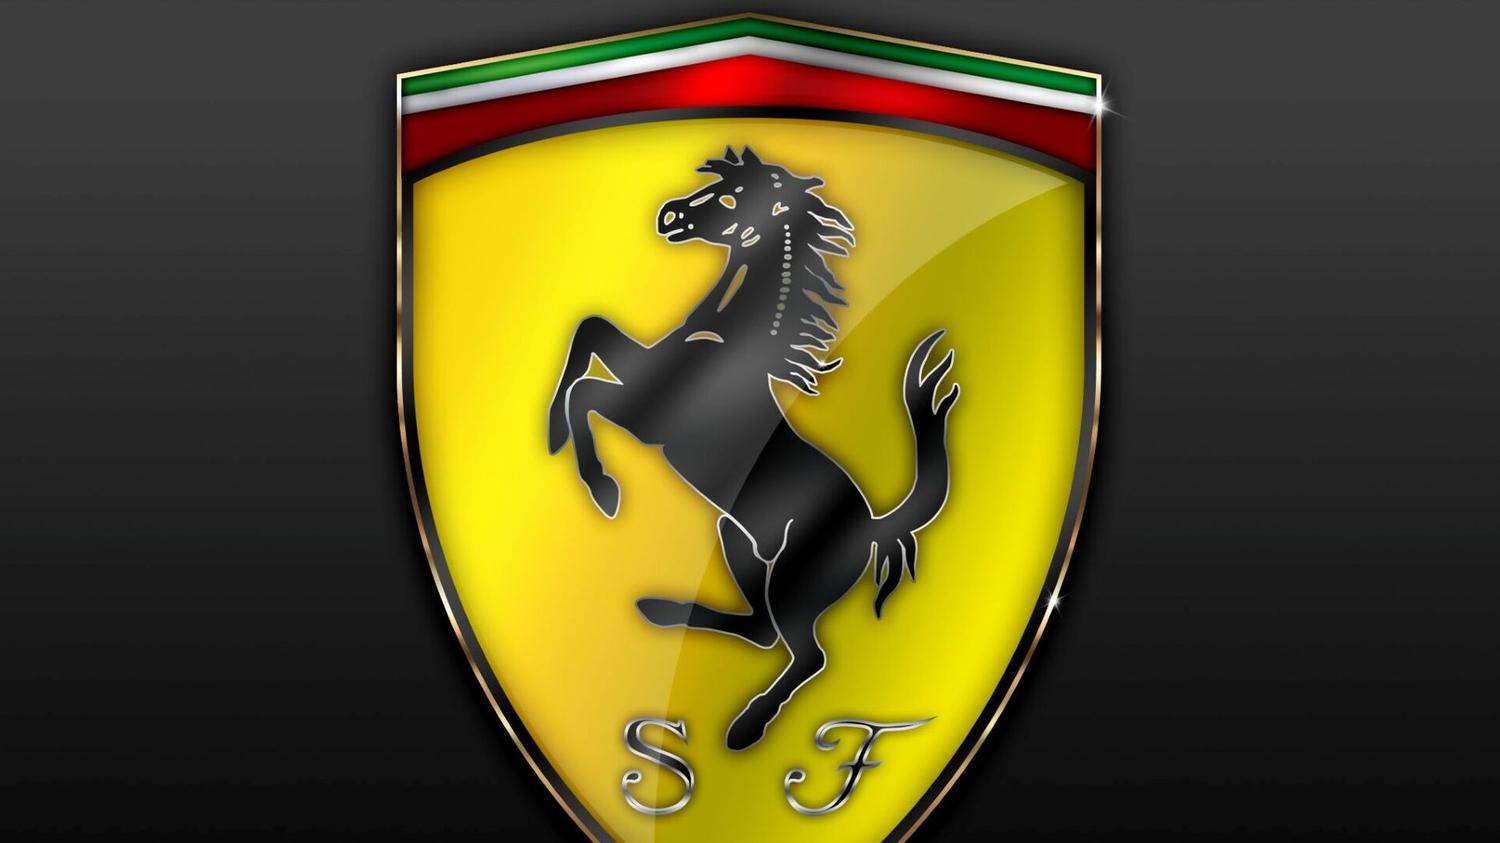   Ferrari 6       - Qutoru